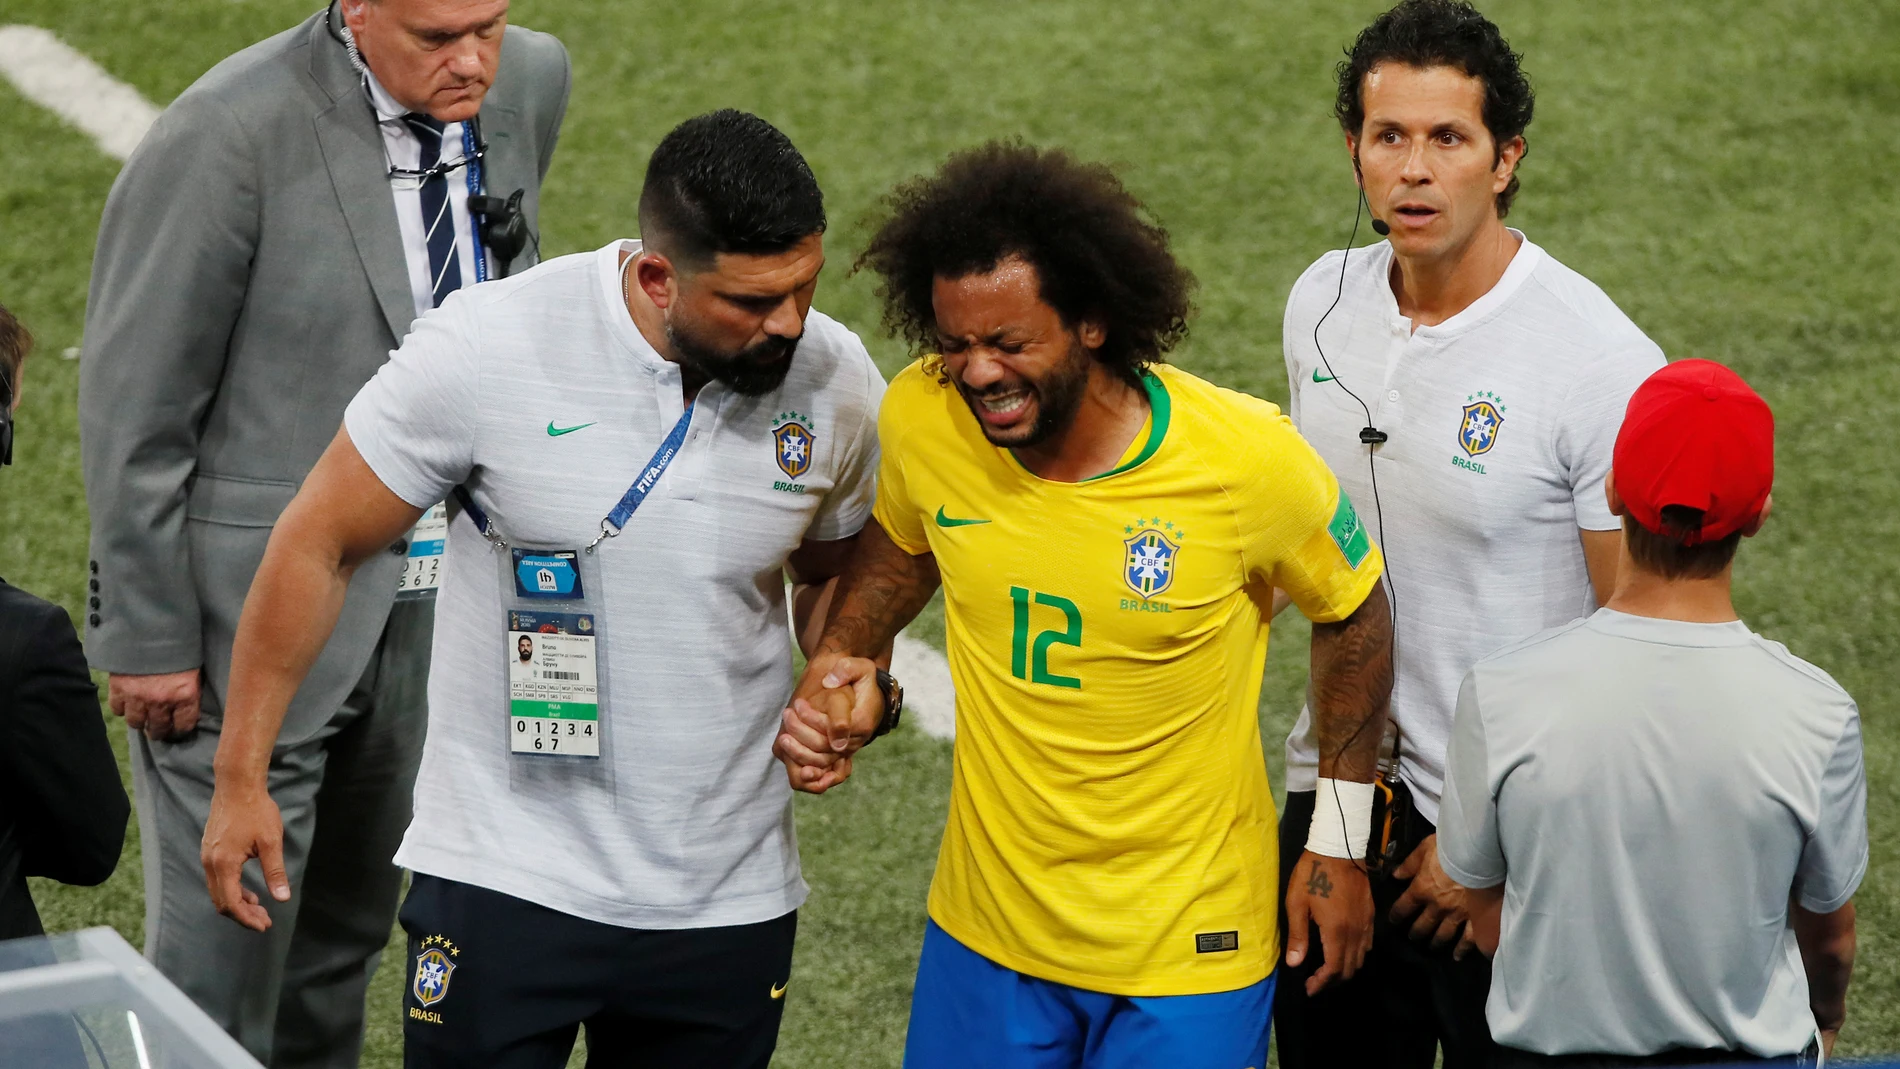 Marcelo se retira lesionado en el partido de Brasil